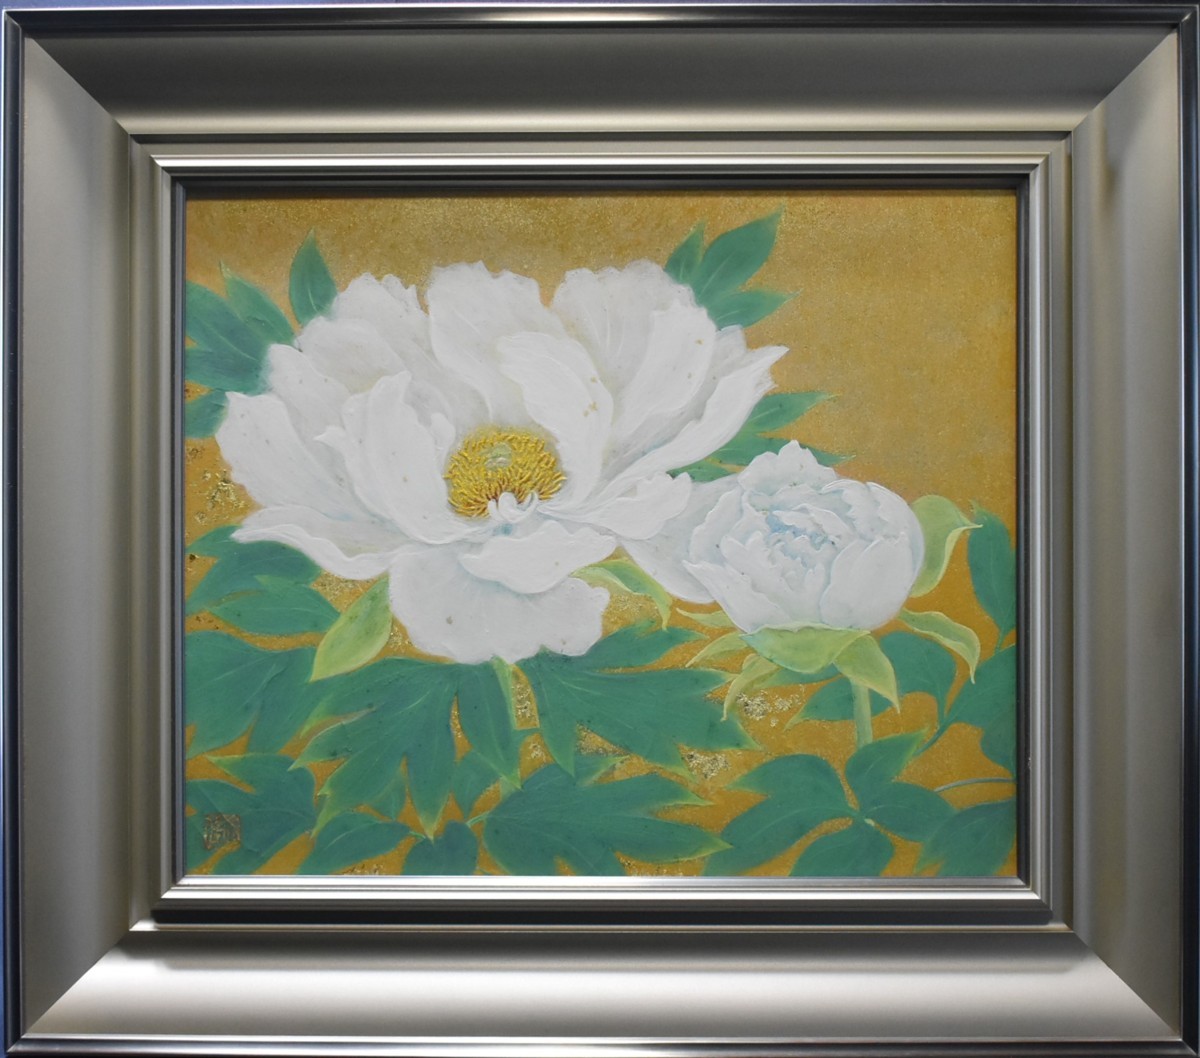 Ein Werk eines beliebten Künstlers! Ryuka Takamizawa, Nr. 8 Fukika Seiko Galerie, Malerei, Japanische Malerei, Person, Bodhisattva